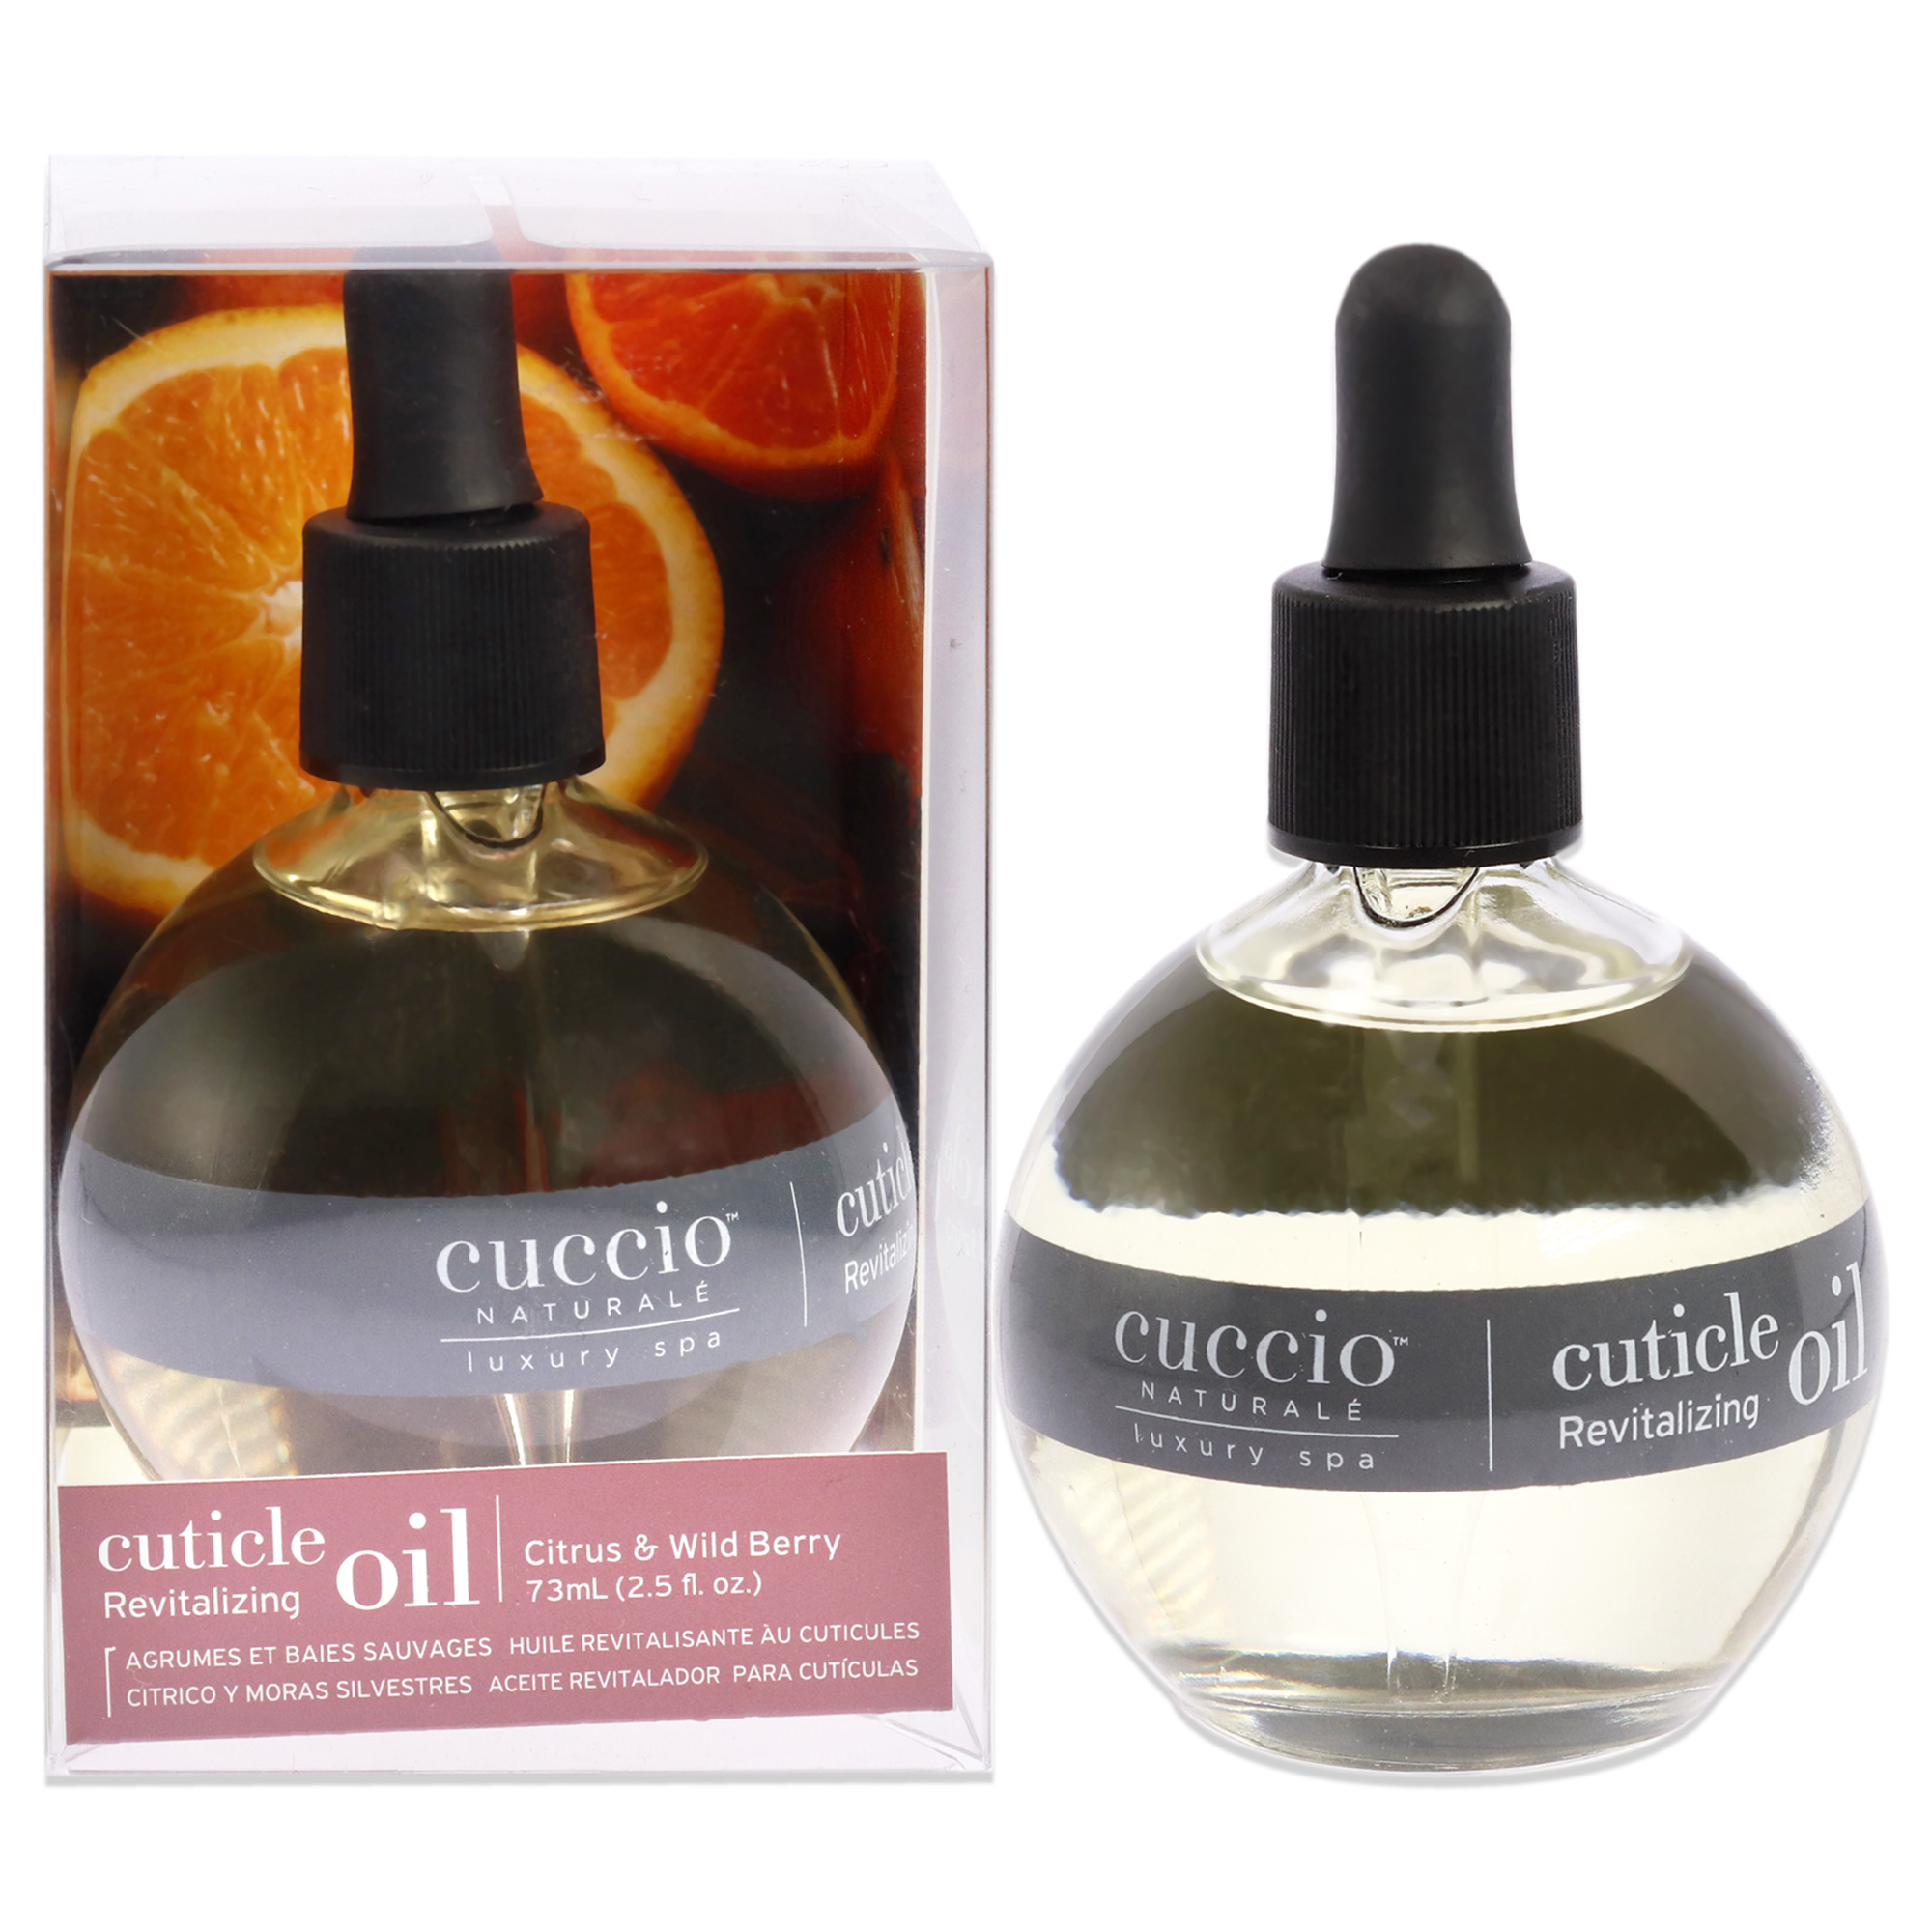 CUCCIO NATURALE Cuticle Revitalizing Oil - Citrus and Wild Berry by Cuccio Naturale for Unisex - 2.5 oz Oil